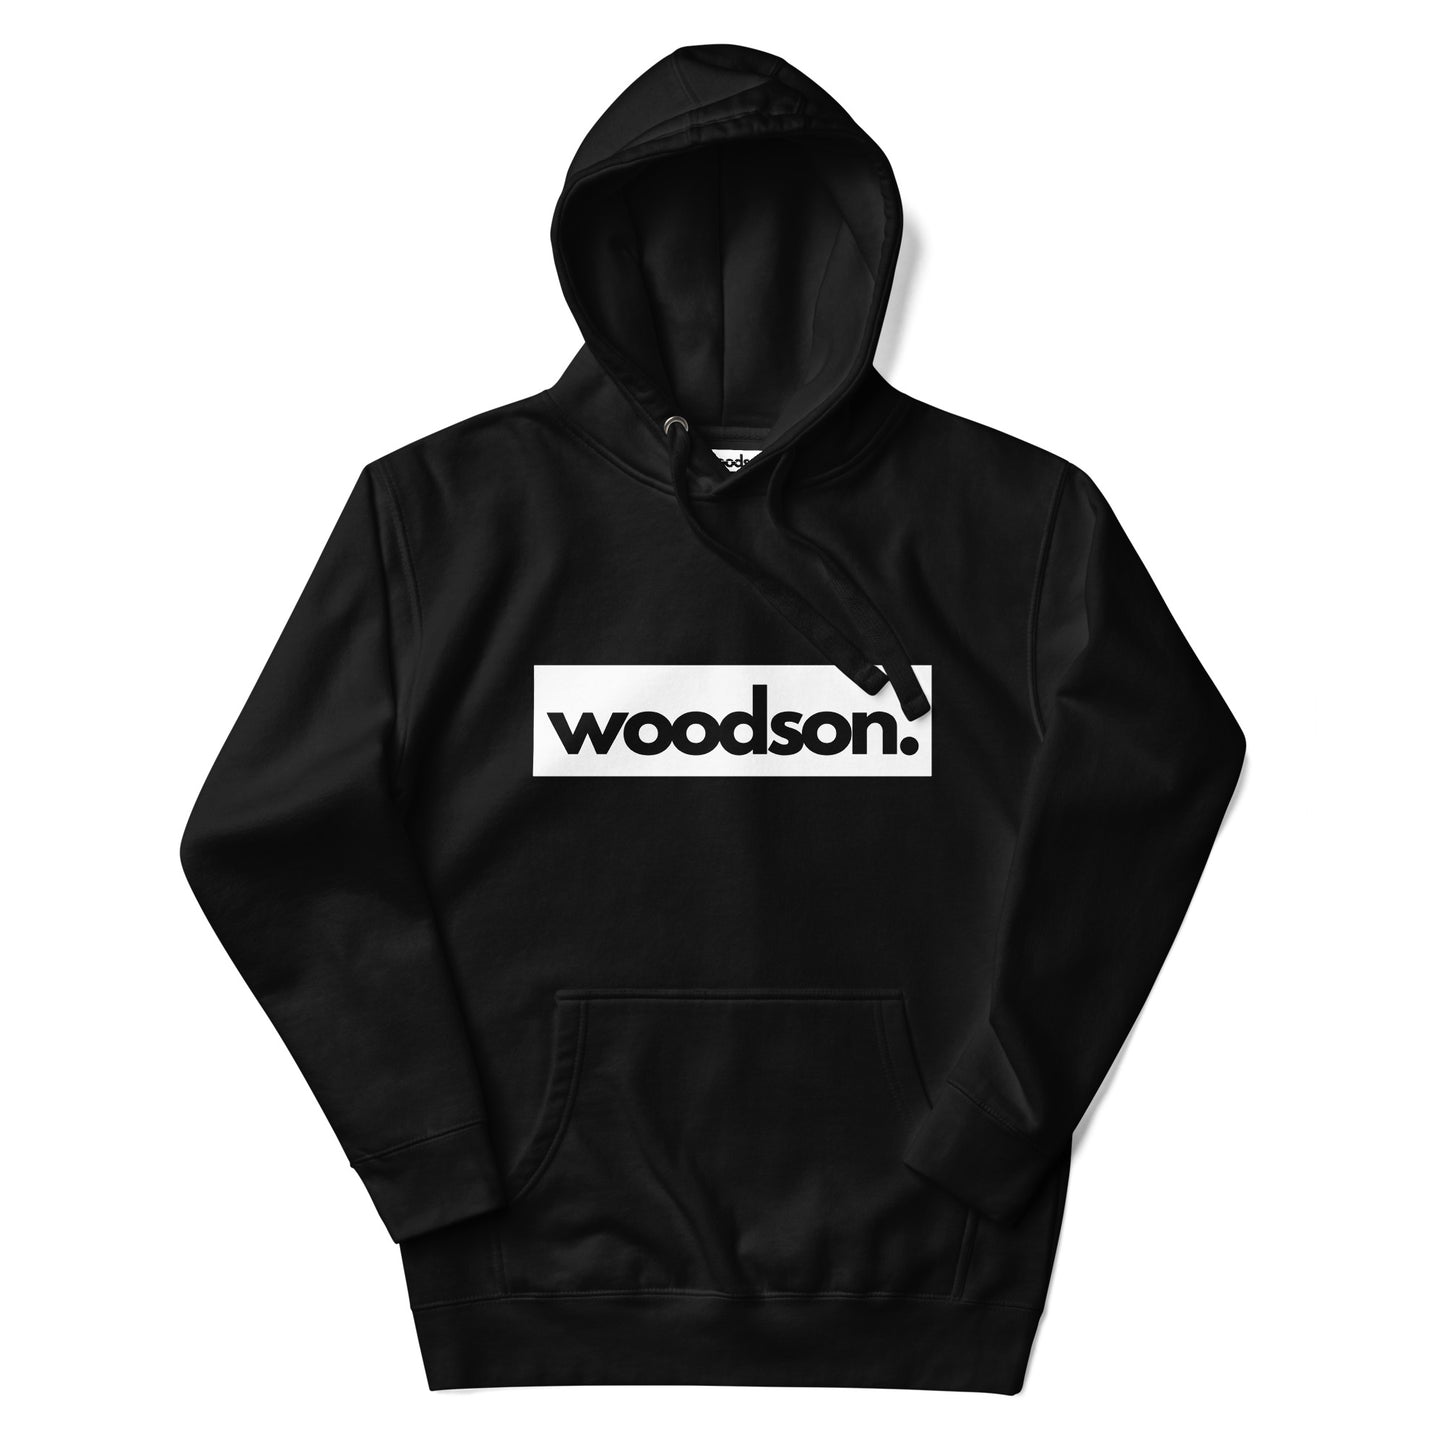 "woodson." Hoodie